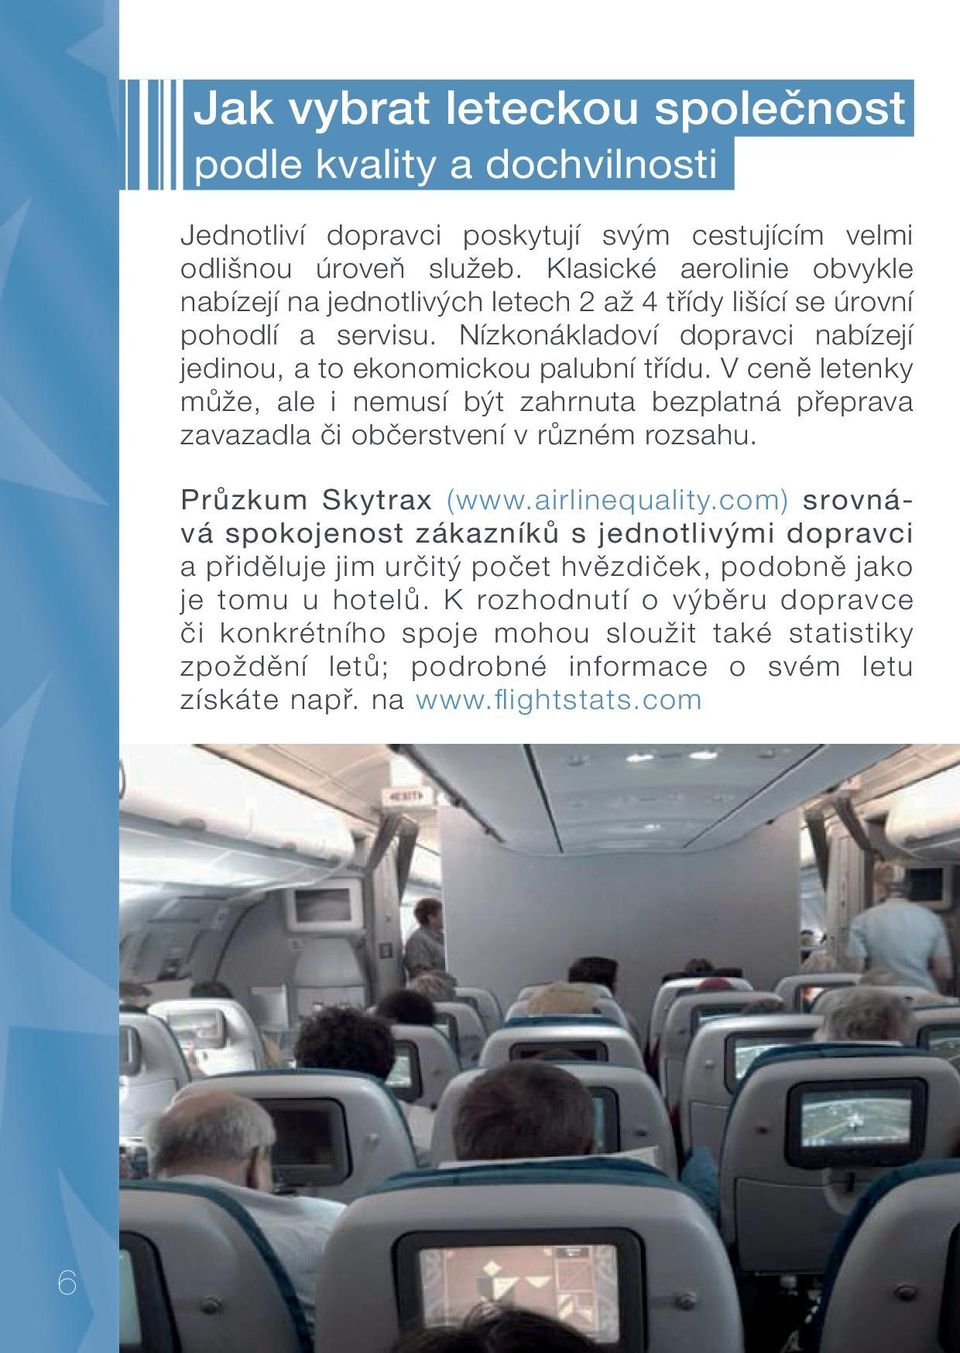 V ceně letenky může, ale i nemusí být zahrnuta bezplatná přeprava zavazadla či občerstvení v různém rozsahu. Průzkum Skytrax (www.airlinequality.